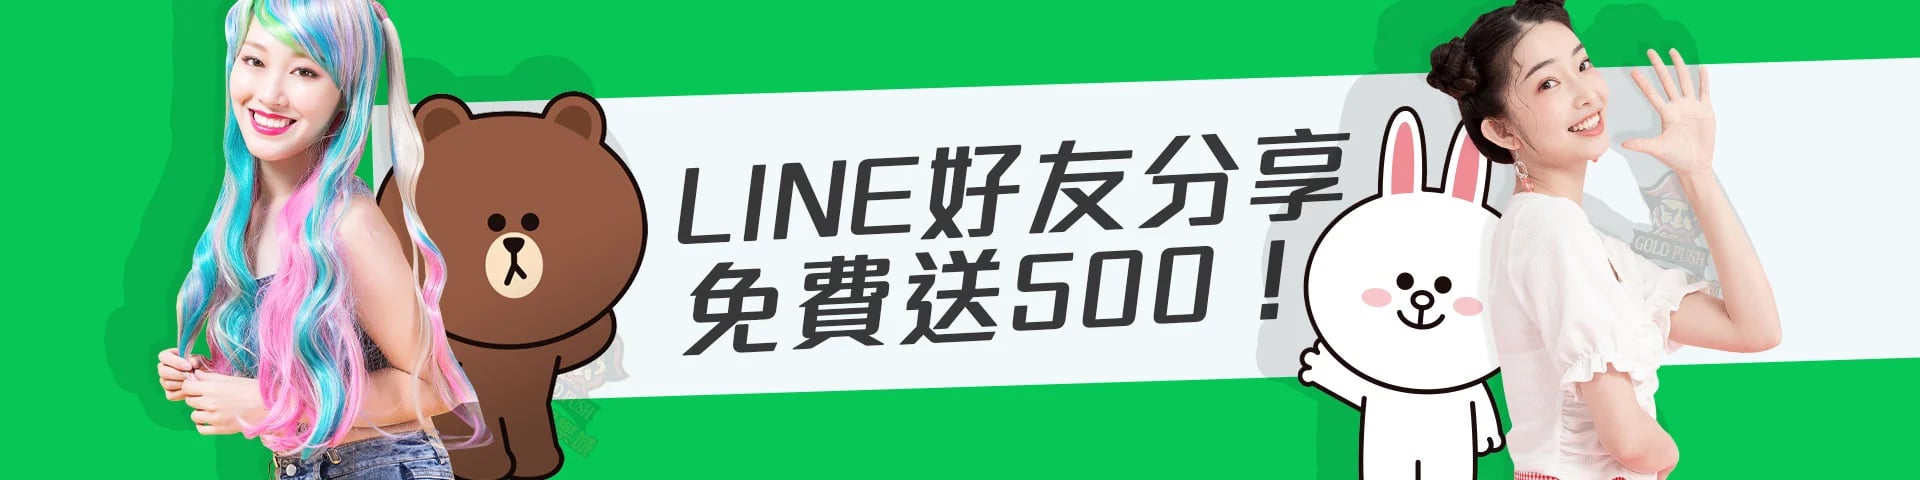 淘金娛樂城-LINE分享